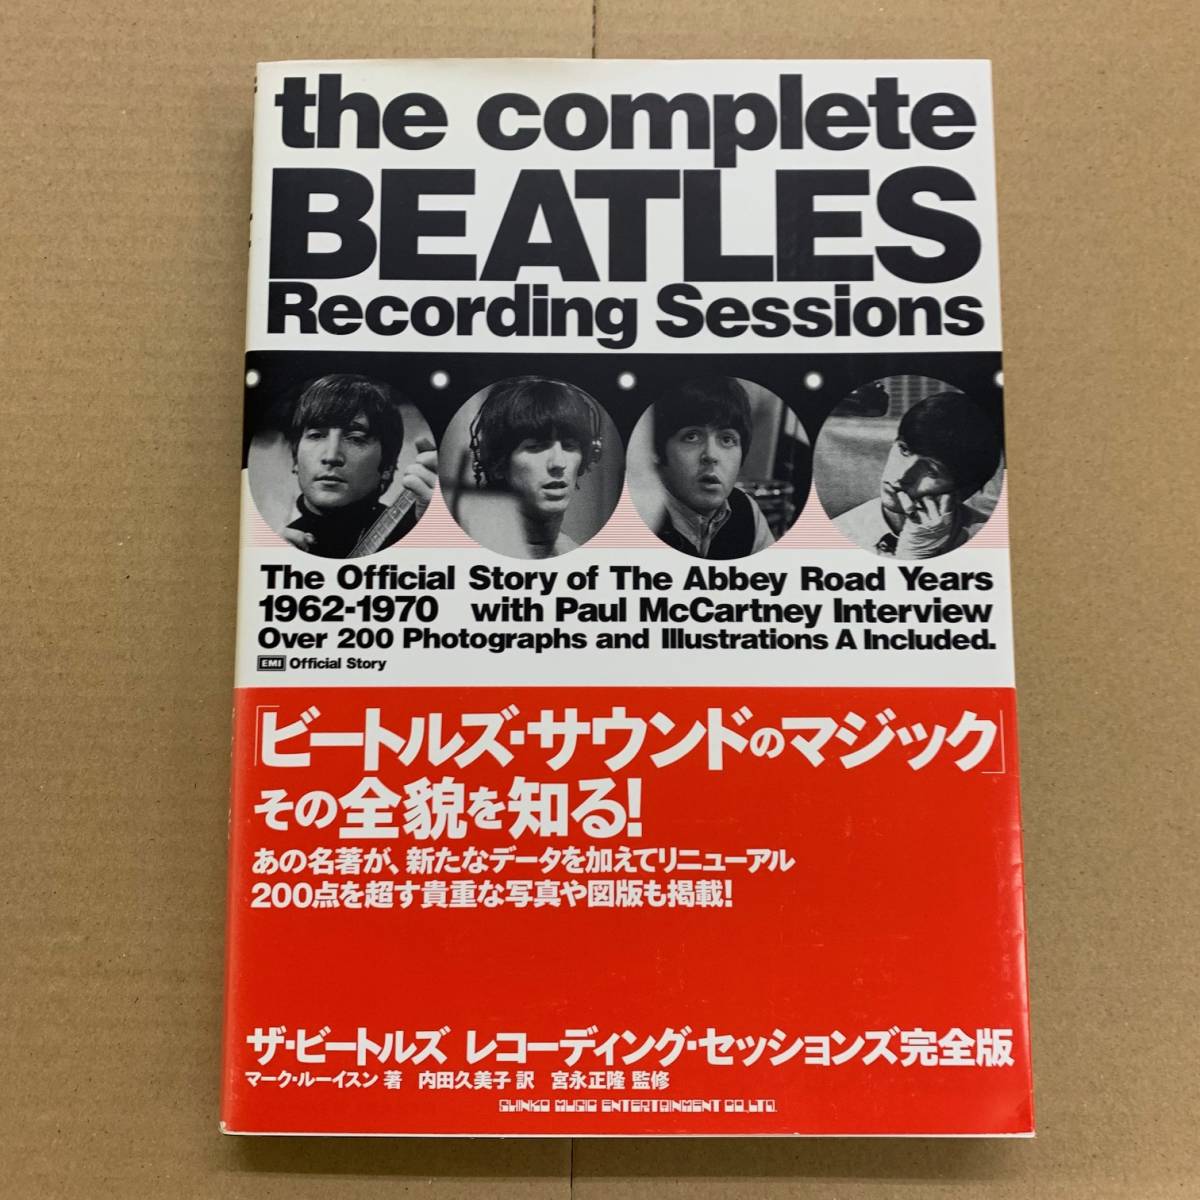 [本] ザ・ビートルズ - レコーディング・セッションズ 完全版 [9784401632947] Beatles/シンコーミュージック/2009年発行_画像1